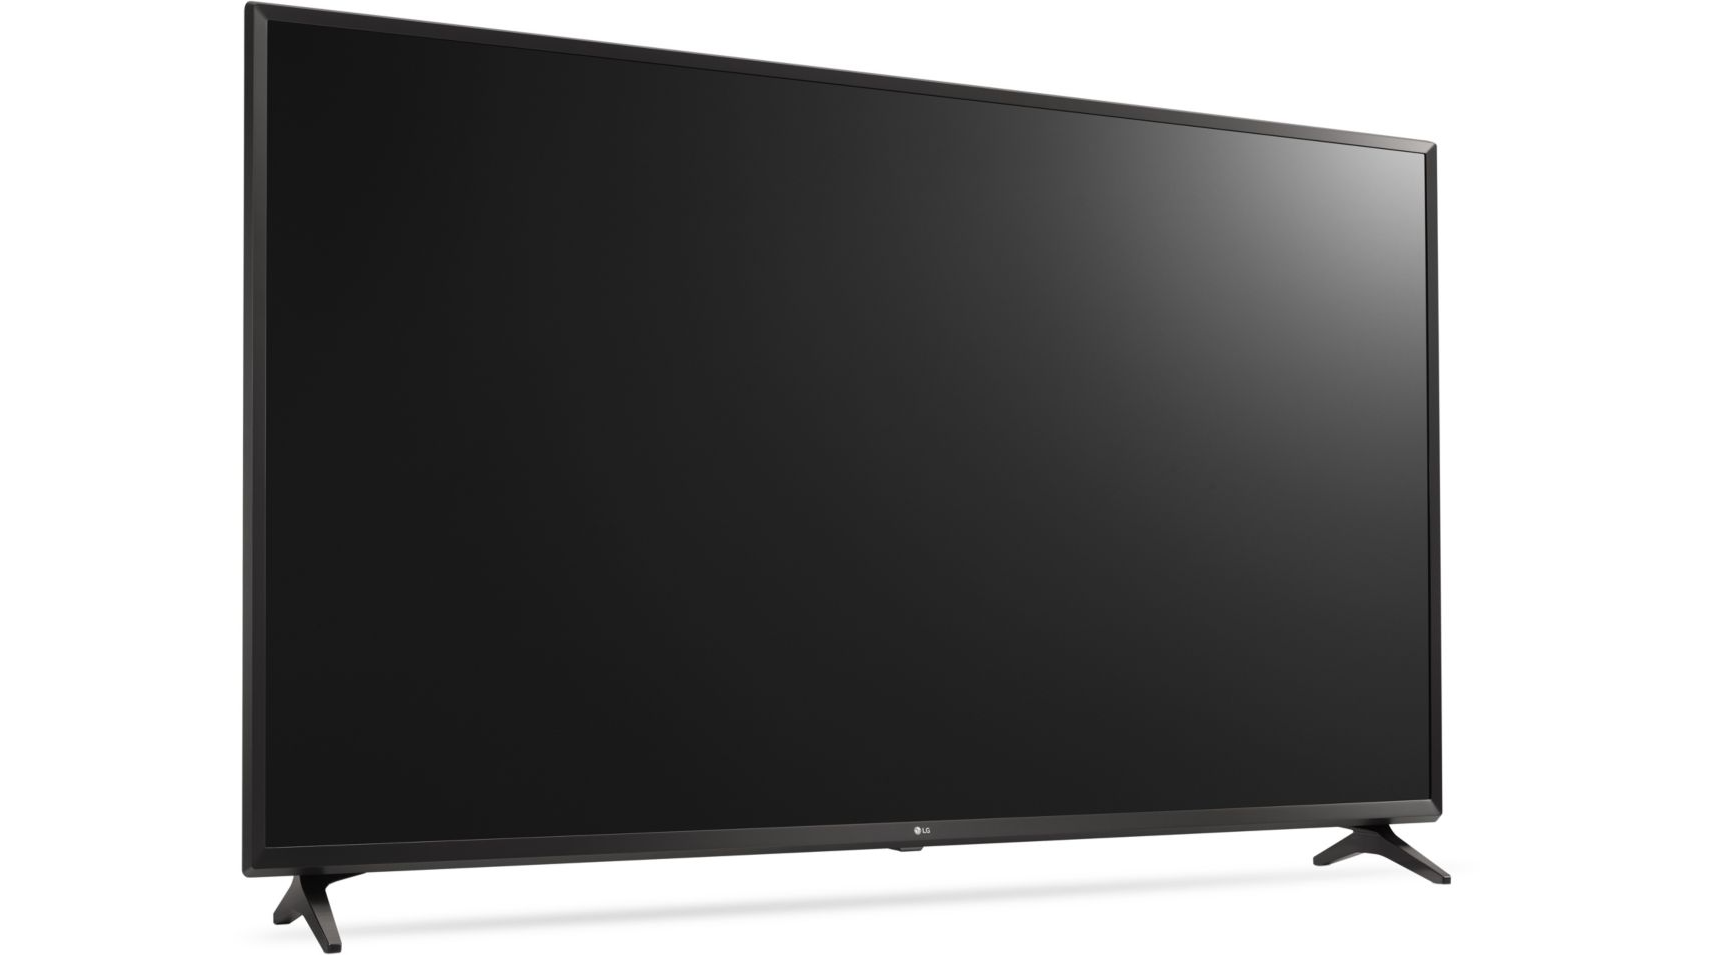 Ecran TV LED UHD 4K HDR 124cm 49 pouces